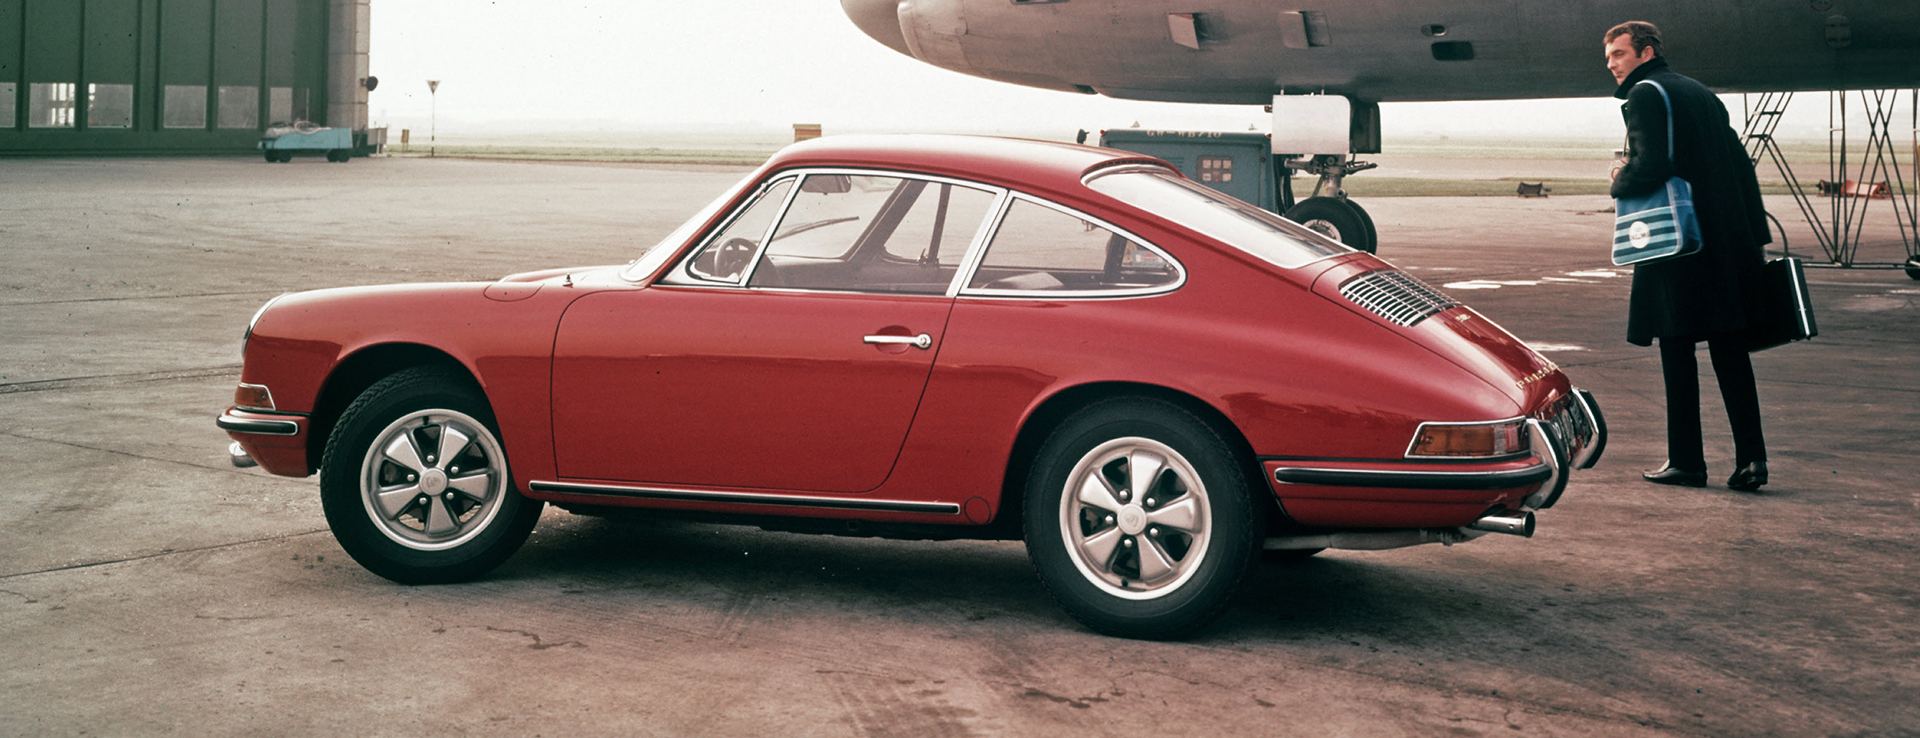 1967 Porsche 911 S 2.0 Coupe beside aeroplane